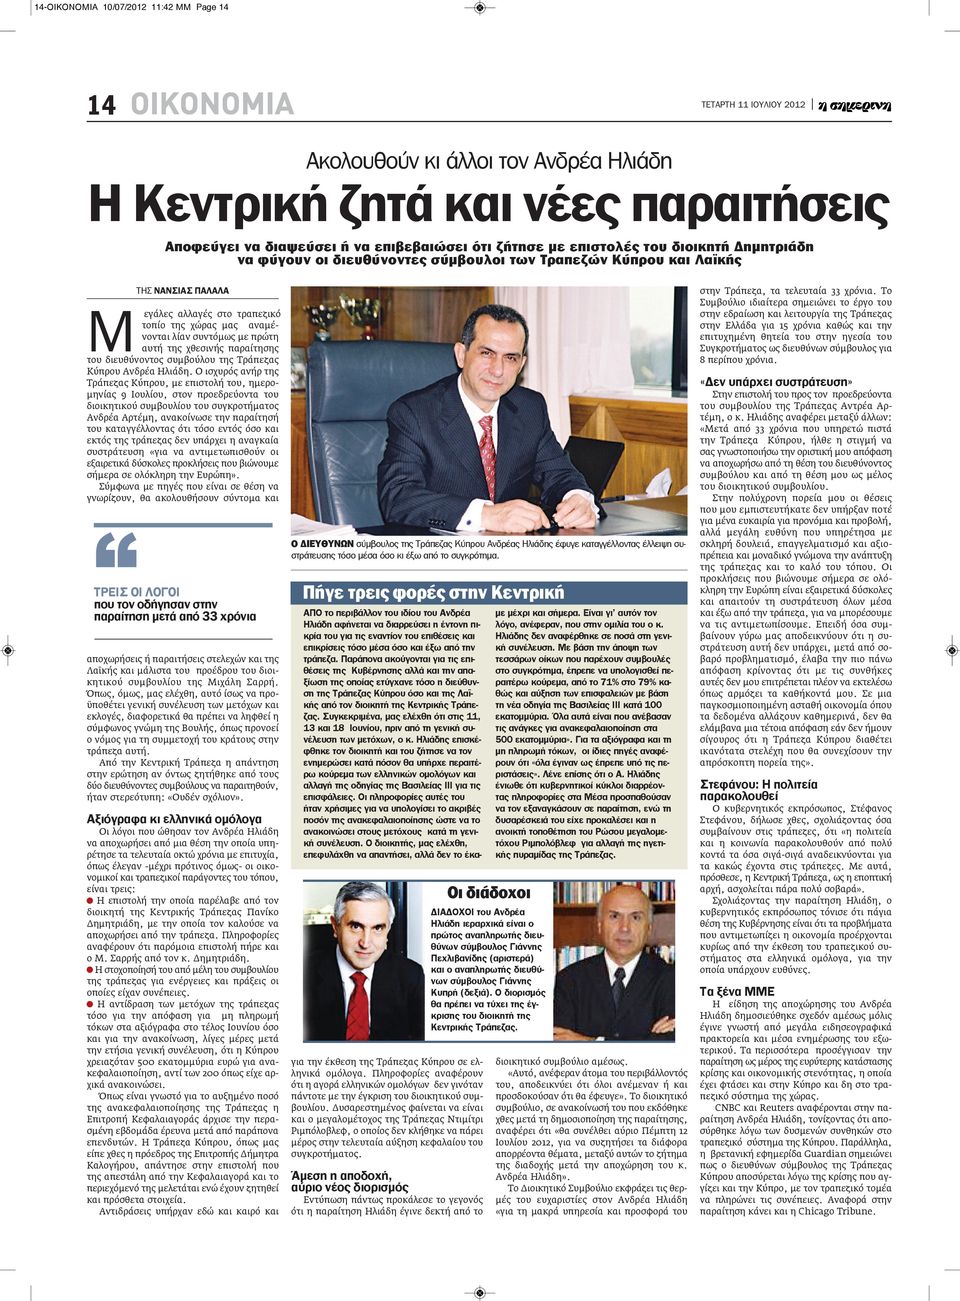 χθεσινής παραίτησης του διευθύνοντος συμβούλου της Τράπεζας Κύπρου Ανδρέα Ηλιάδη.